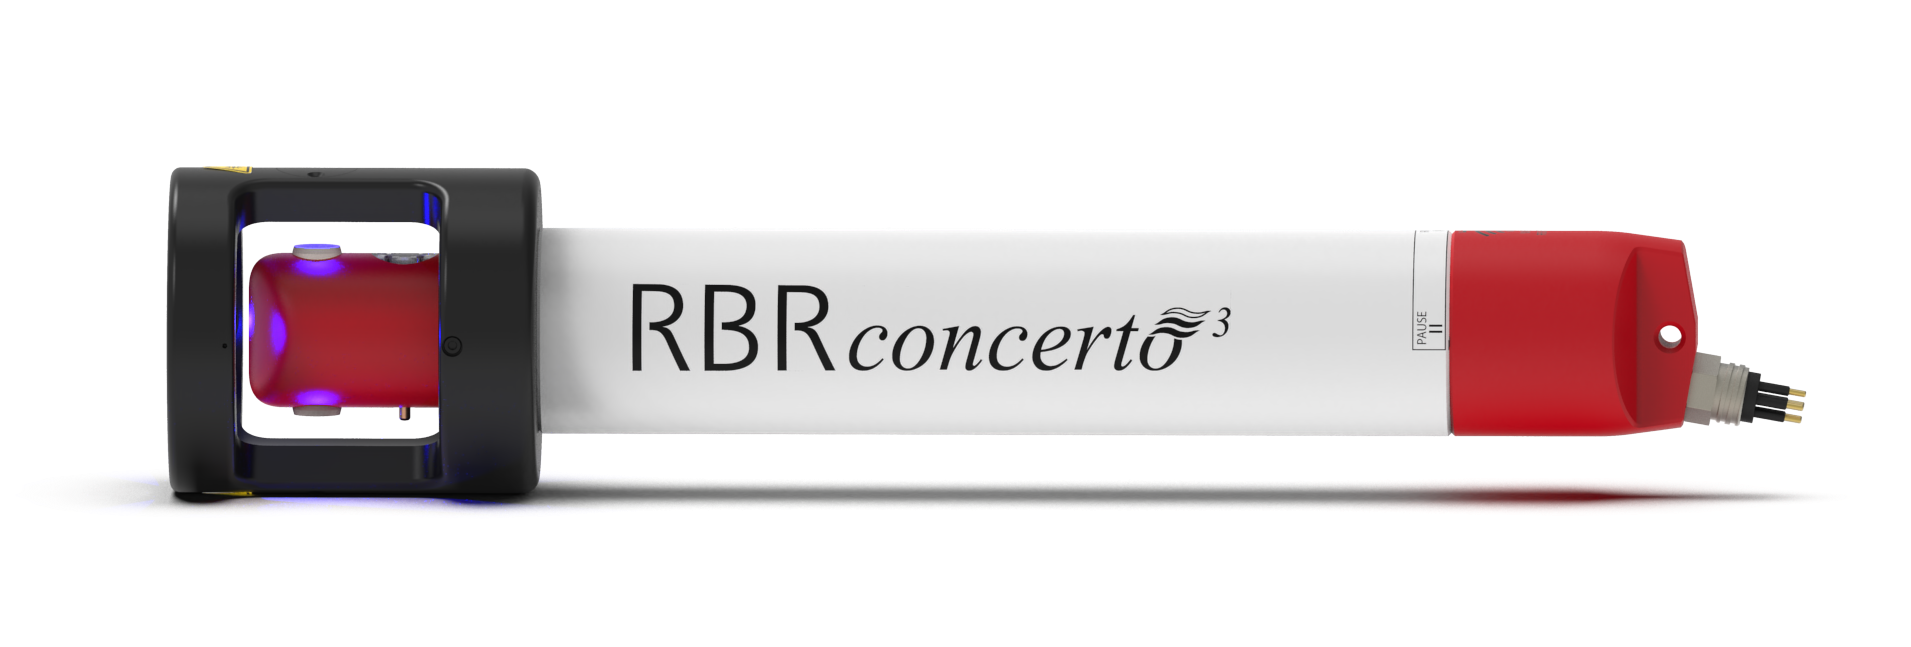 RBRconcerto³ C.T.D